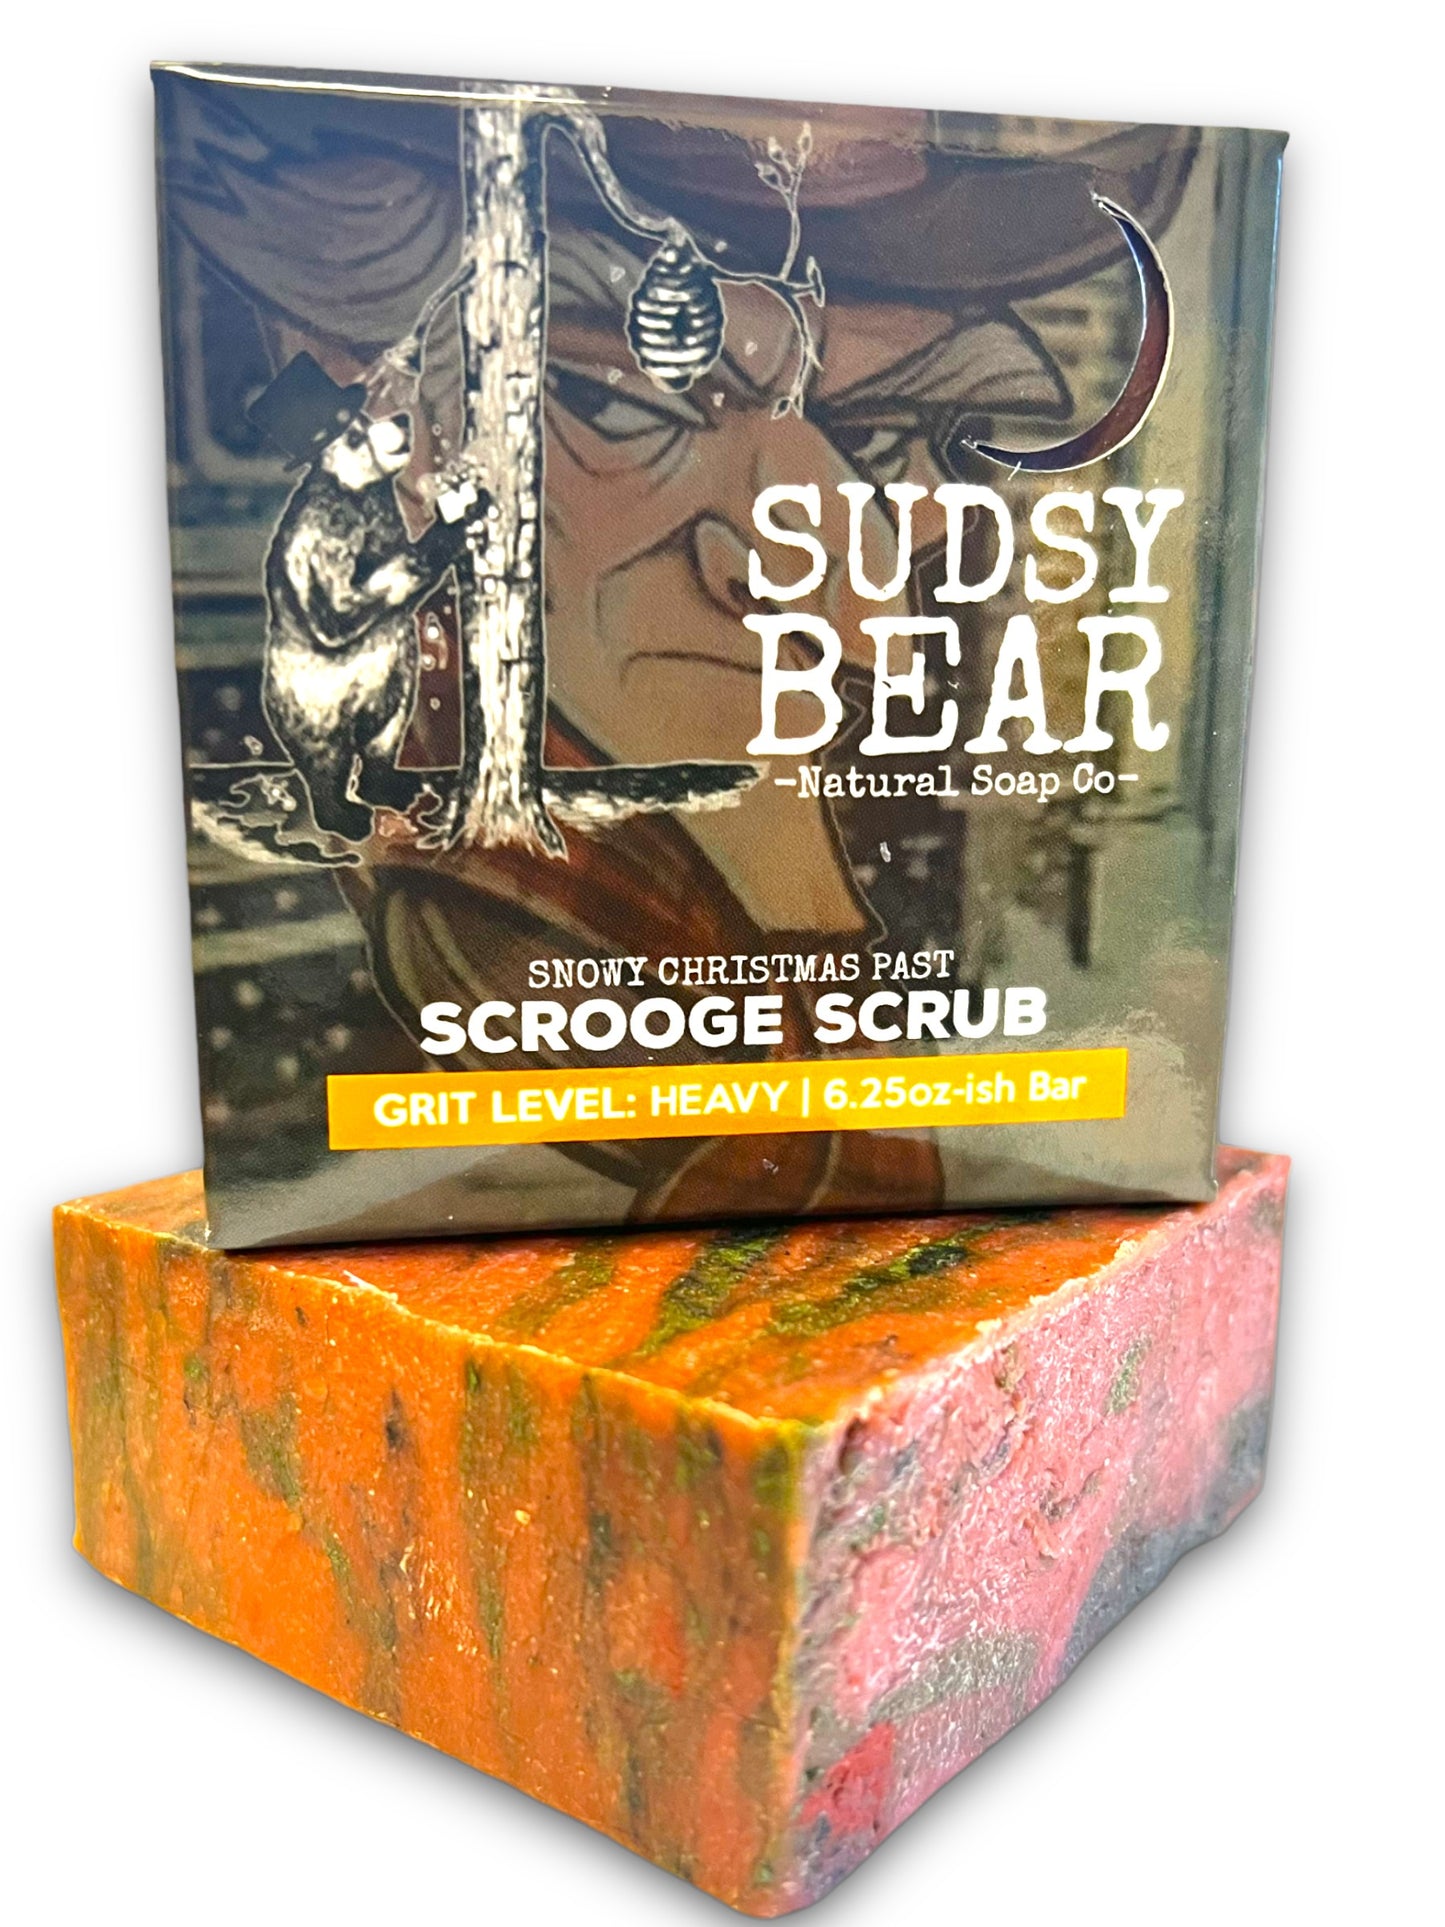 LIVIN' EASY – SUDSY BEAR SOAP COMPANY